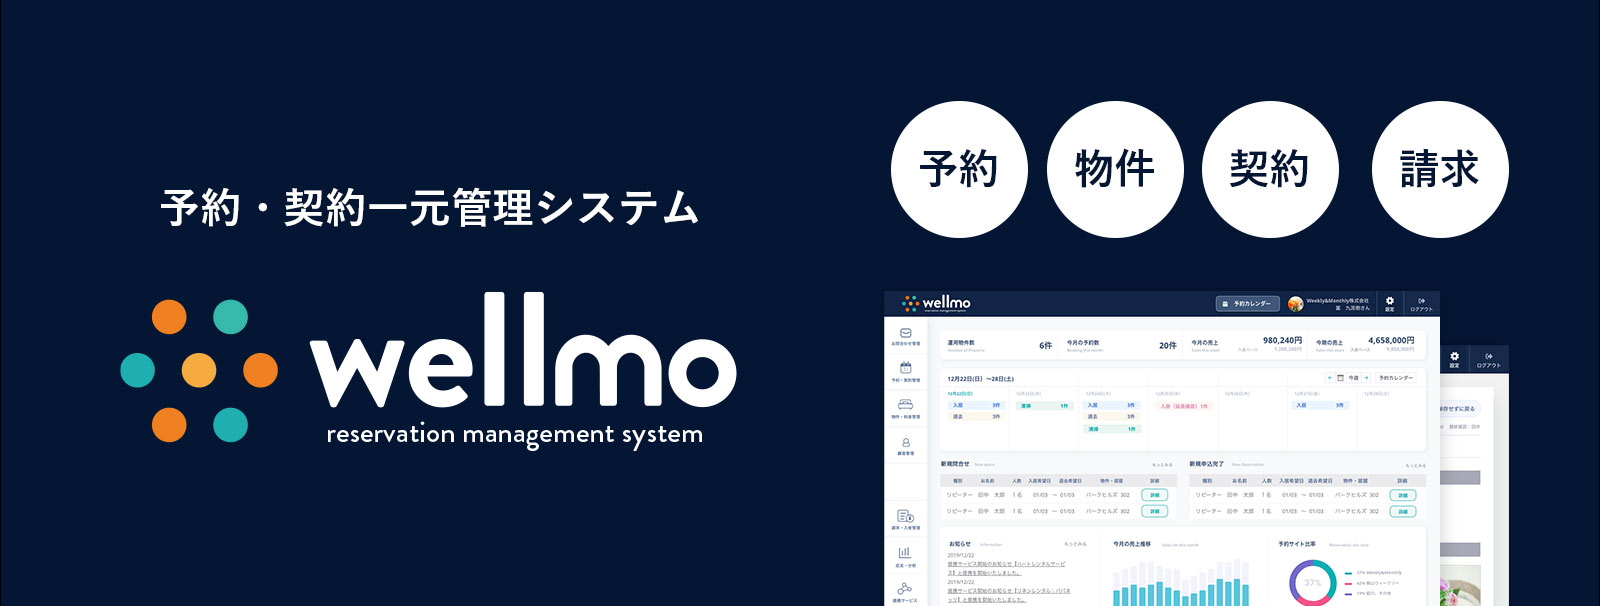 マンスリーマンション管理システム「wellmo【ウェルモ】」